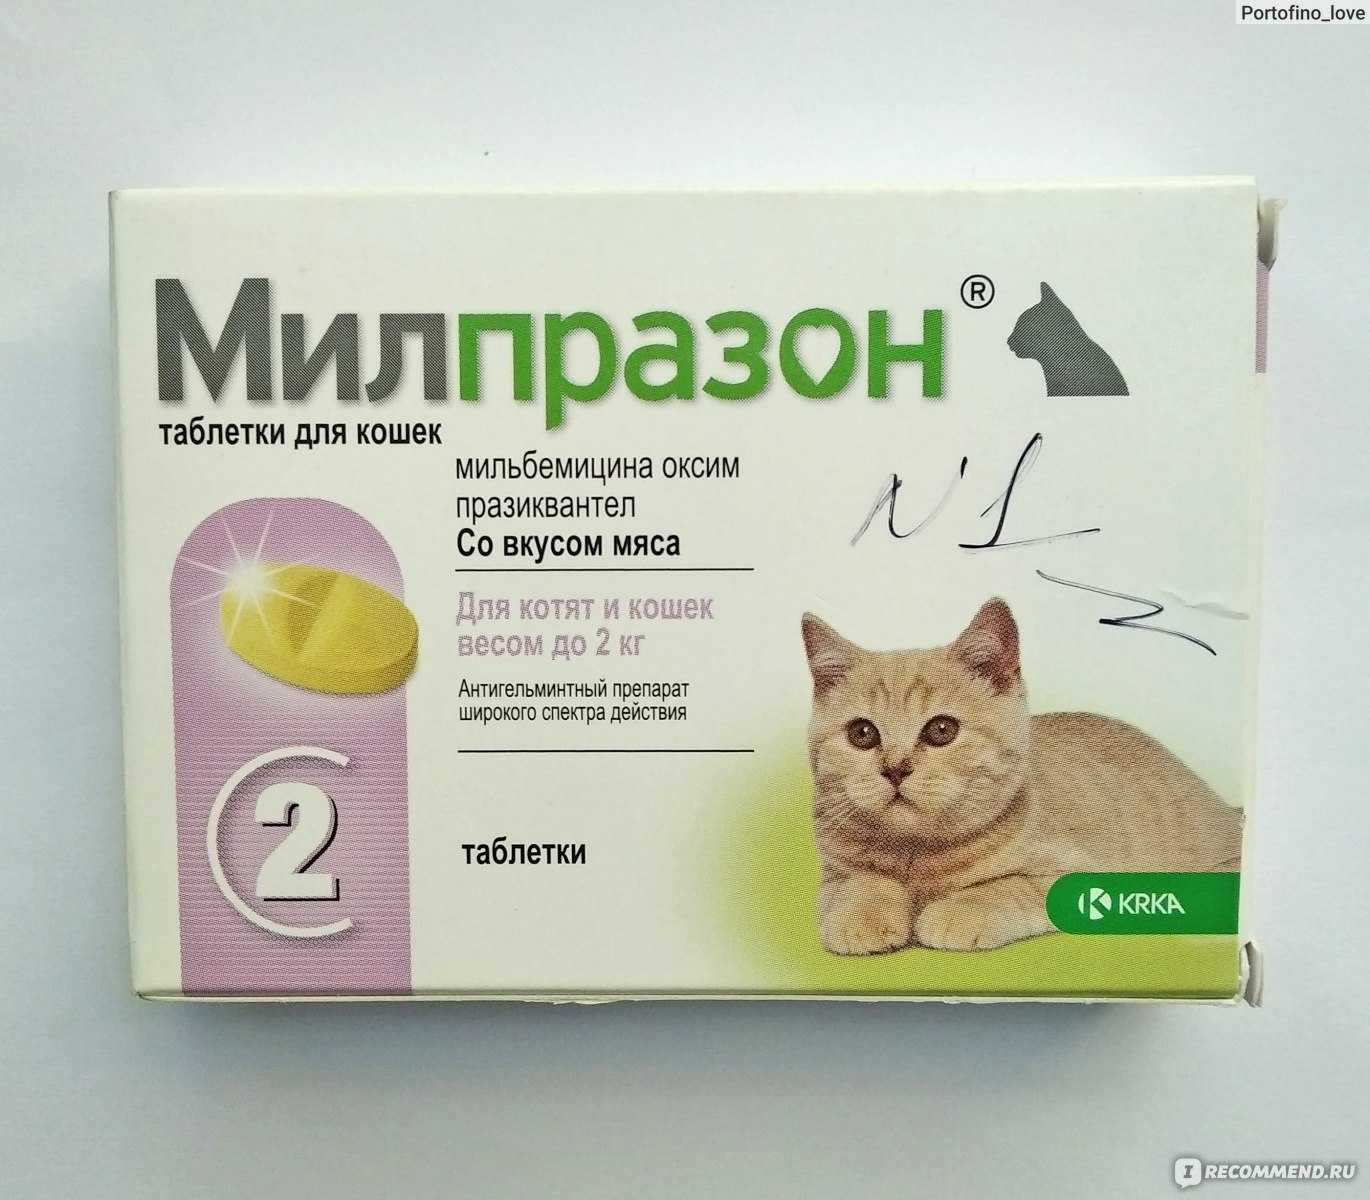 Как часто "глистогонить" кошку, если она домашняя, для профилактики, сколько раз давать таблетки?